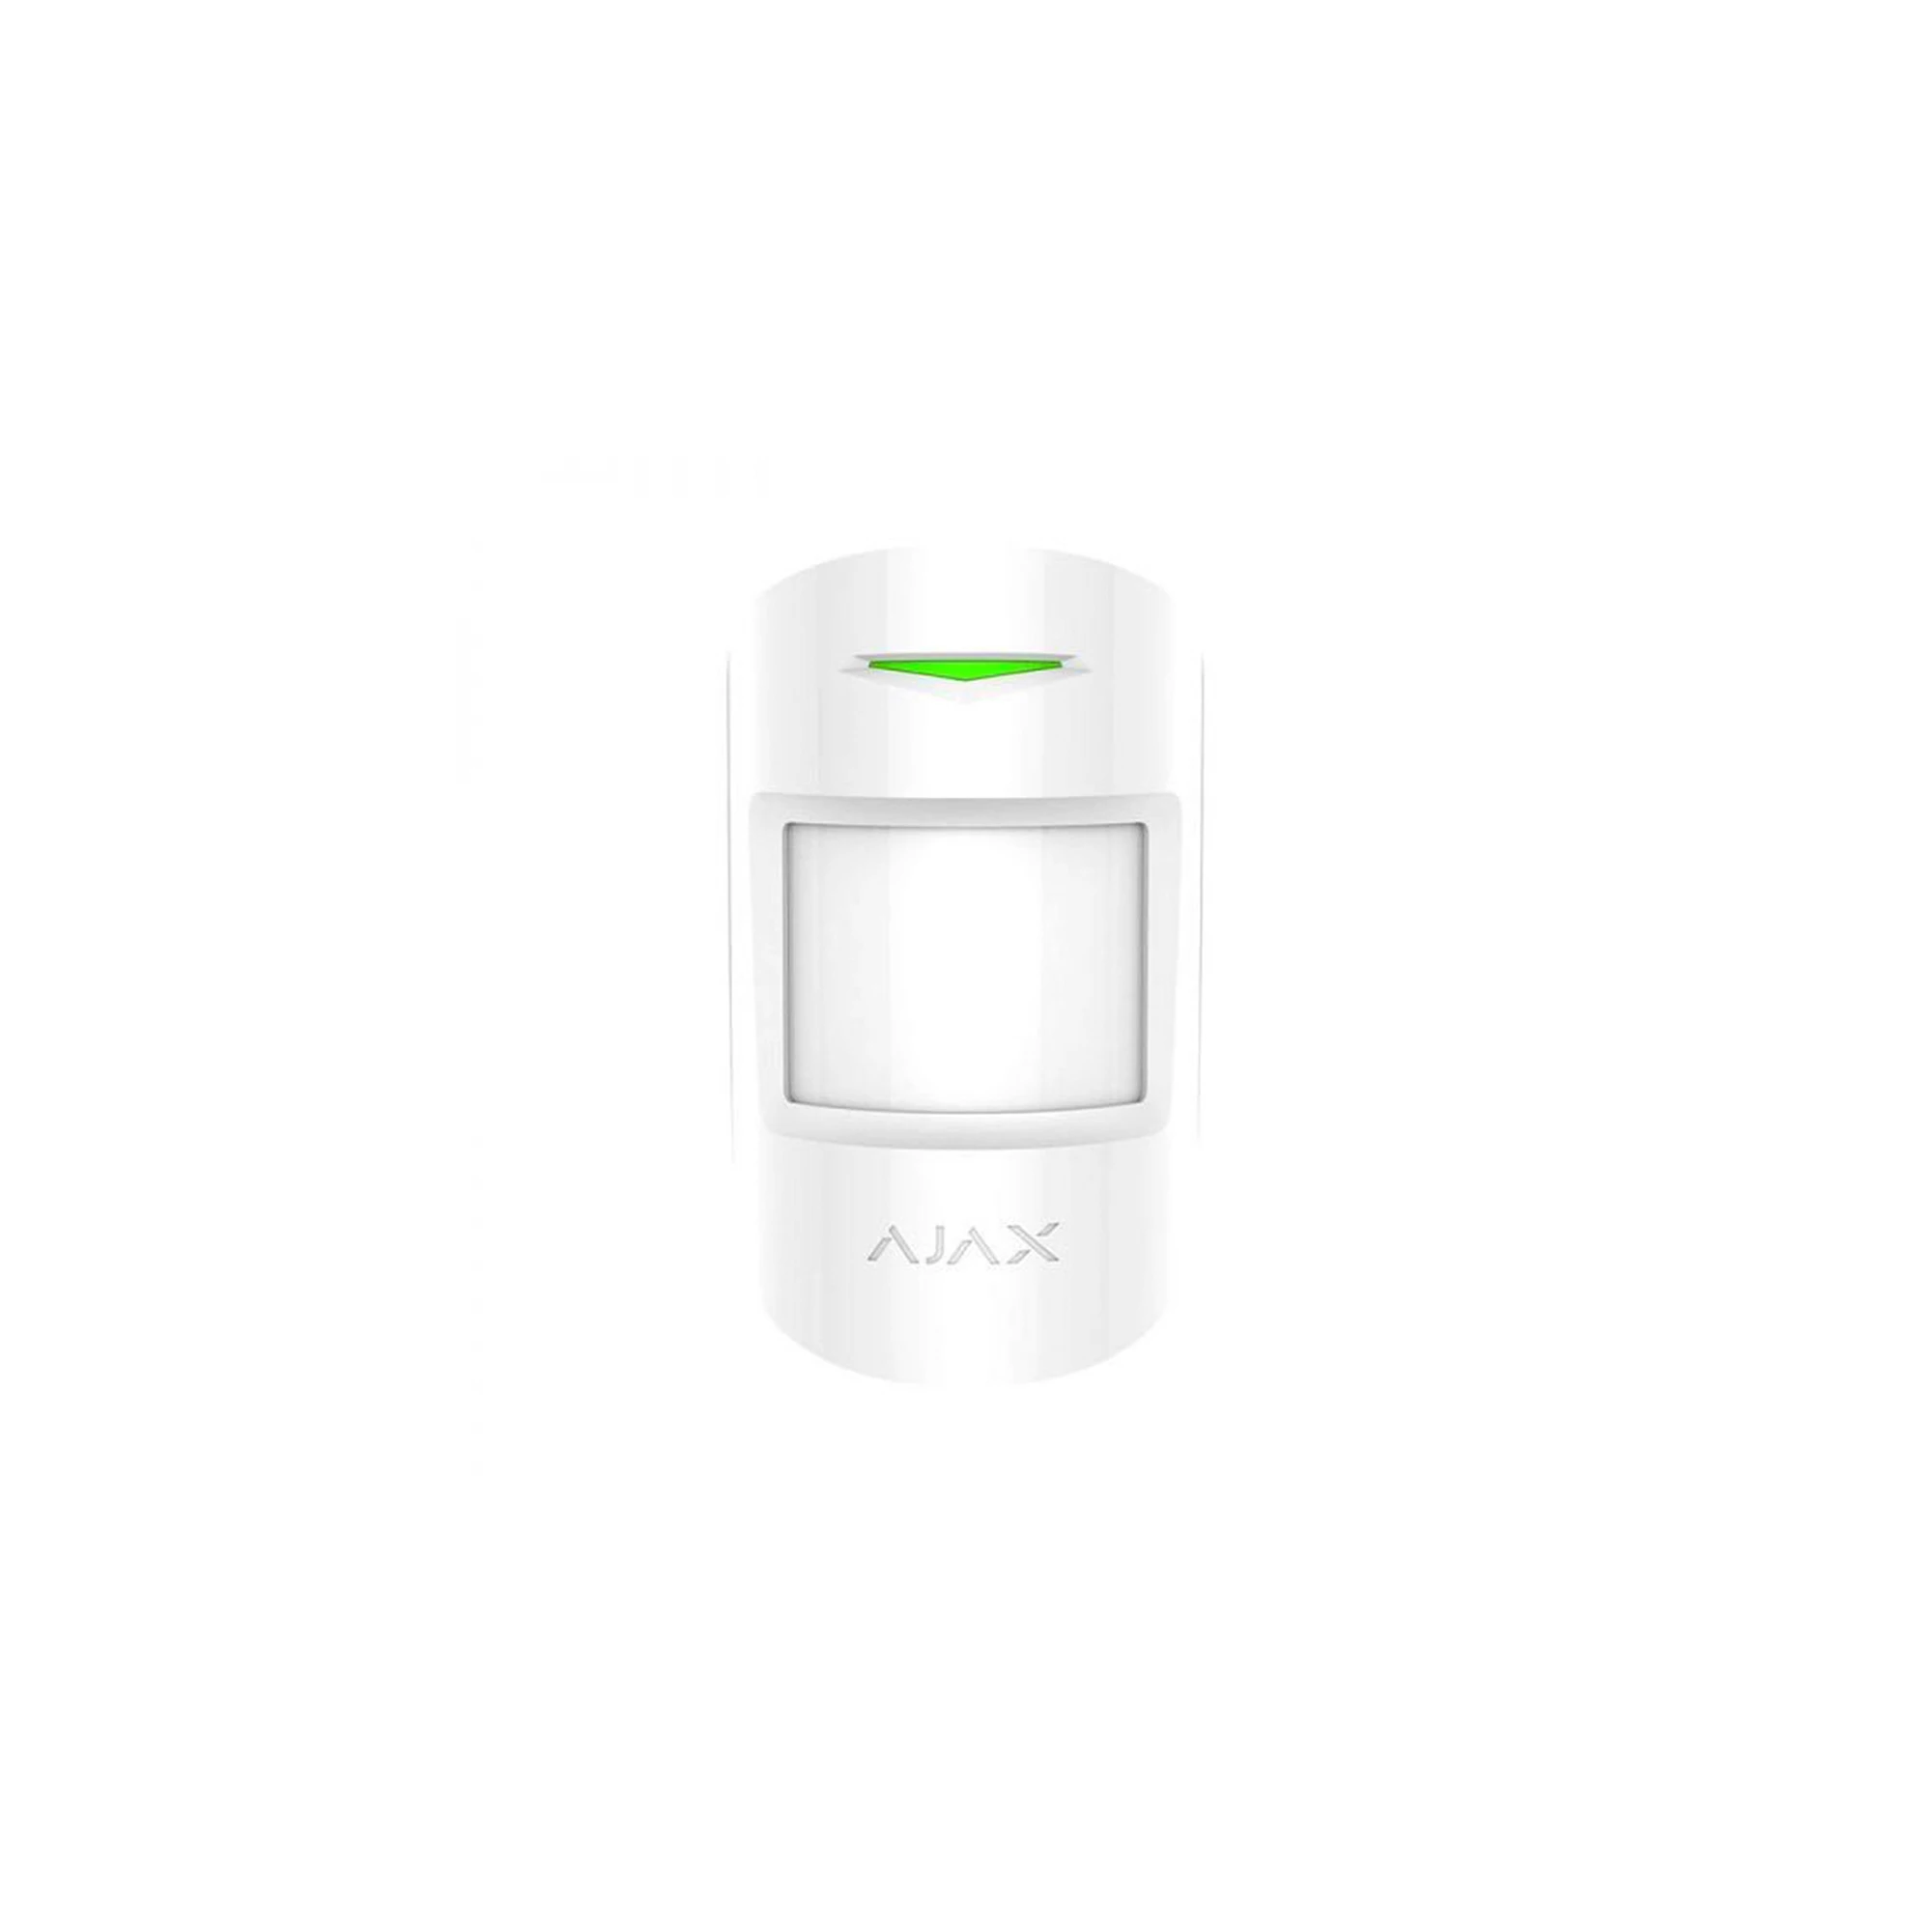 Ajax MotionProtect Plus White - бездротовий датчик руху з мікрохвильовим сенсором